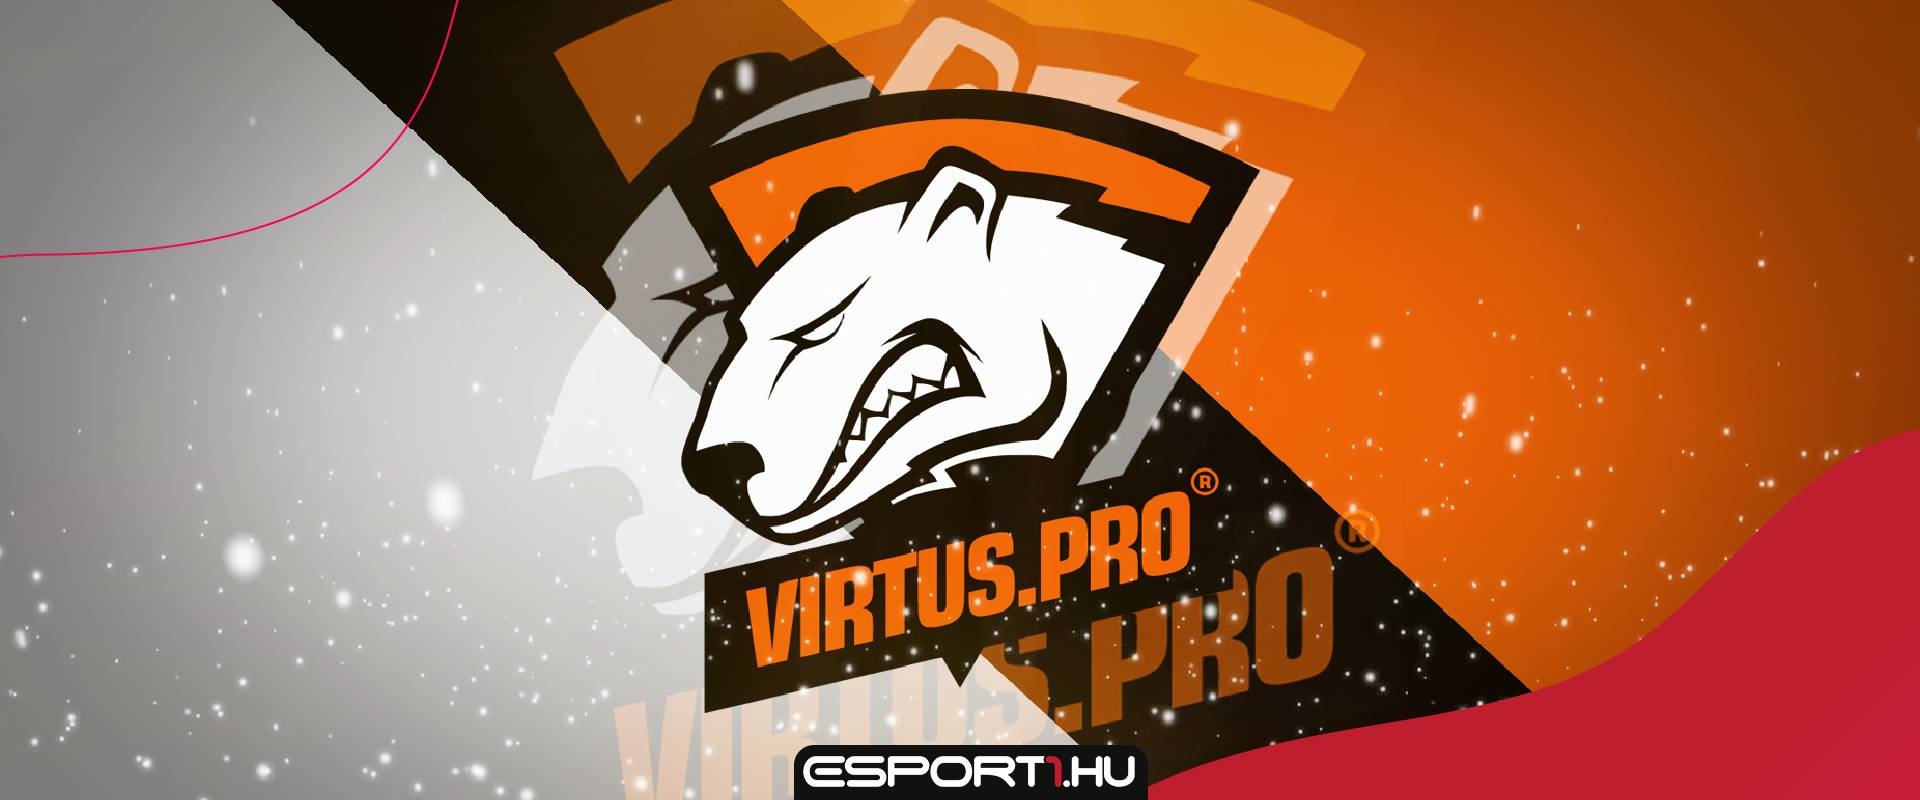 Hamarosan új csapattal jelentkezhet a Virtus.pro - Az AVANGAR játékosai a kiszemeltek